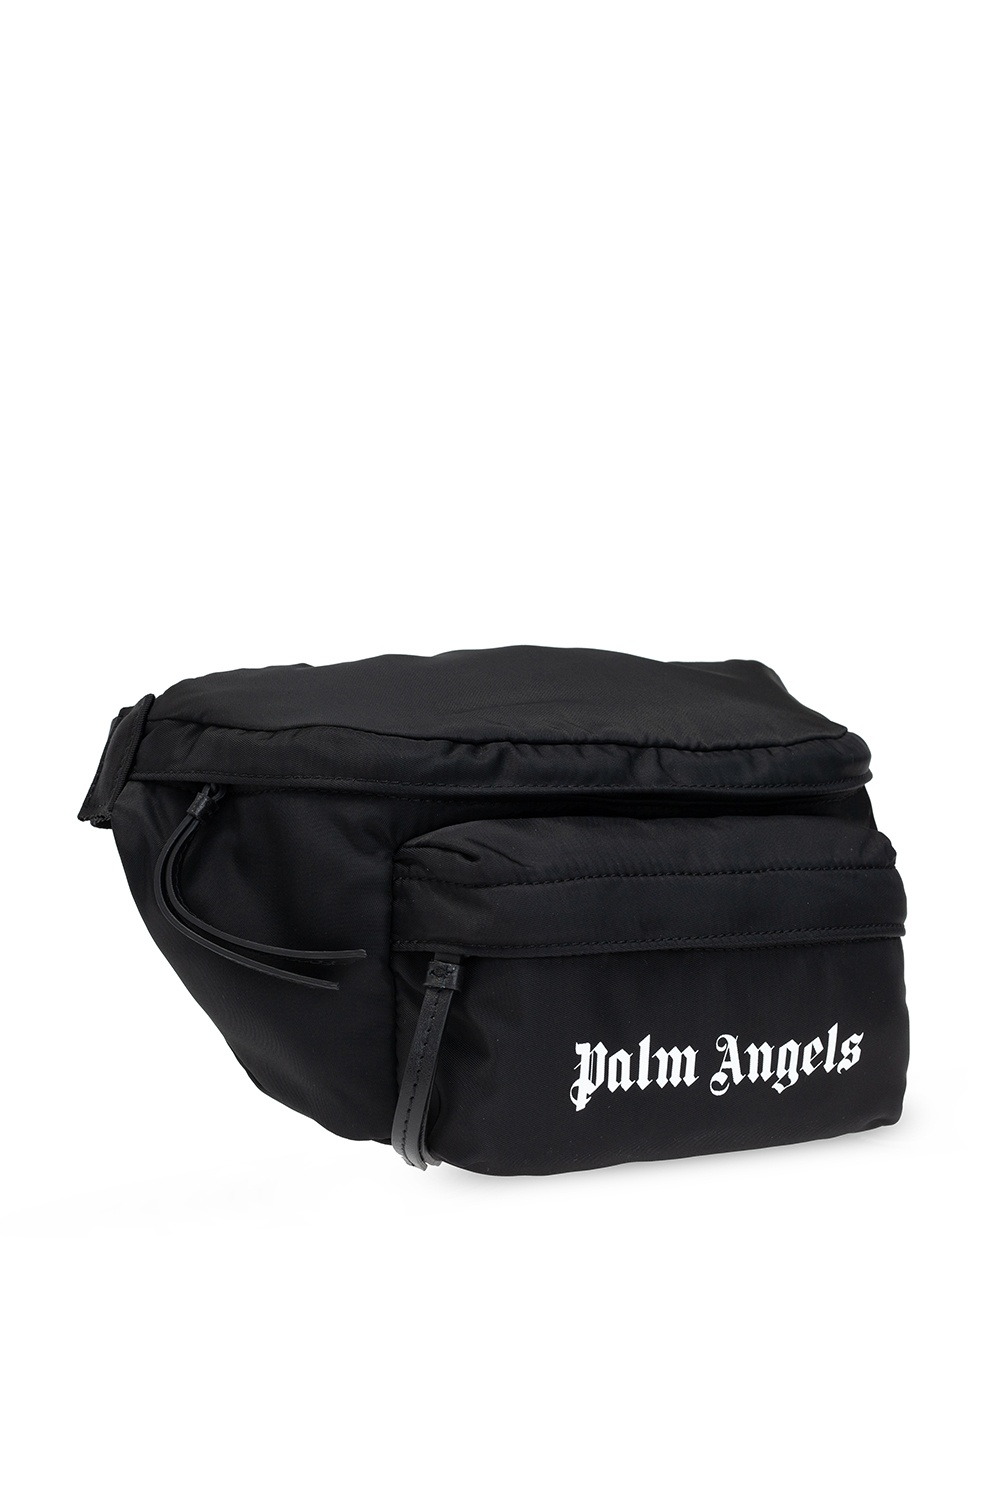 Belt bags Palm Angels - Damier check print belt bag